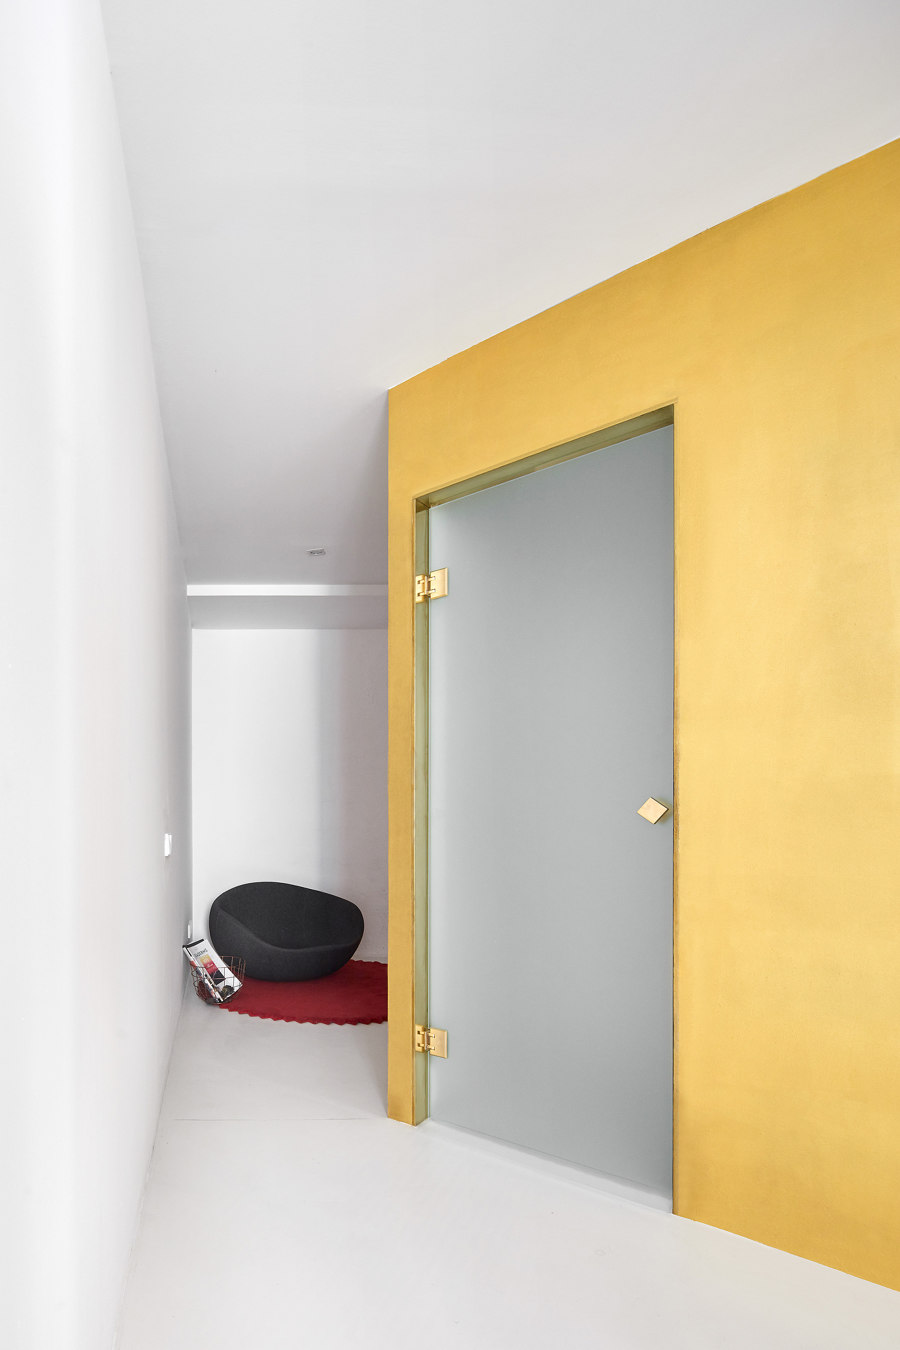 Duplex Tibbaut de Raul Sanchez Architects | Espacios habitables